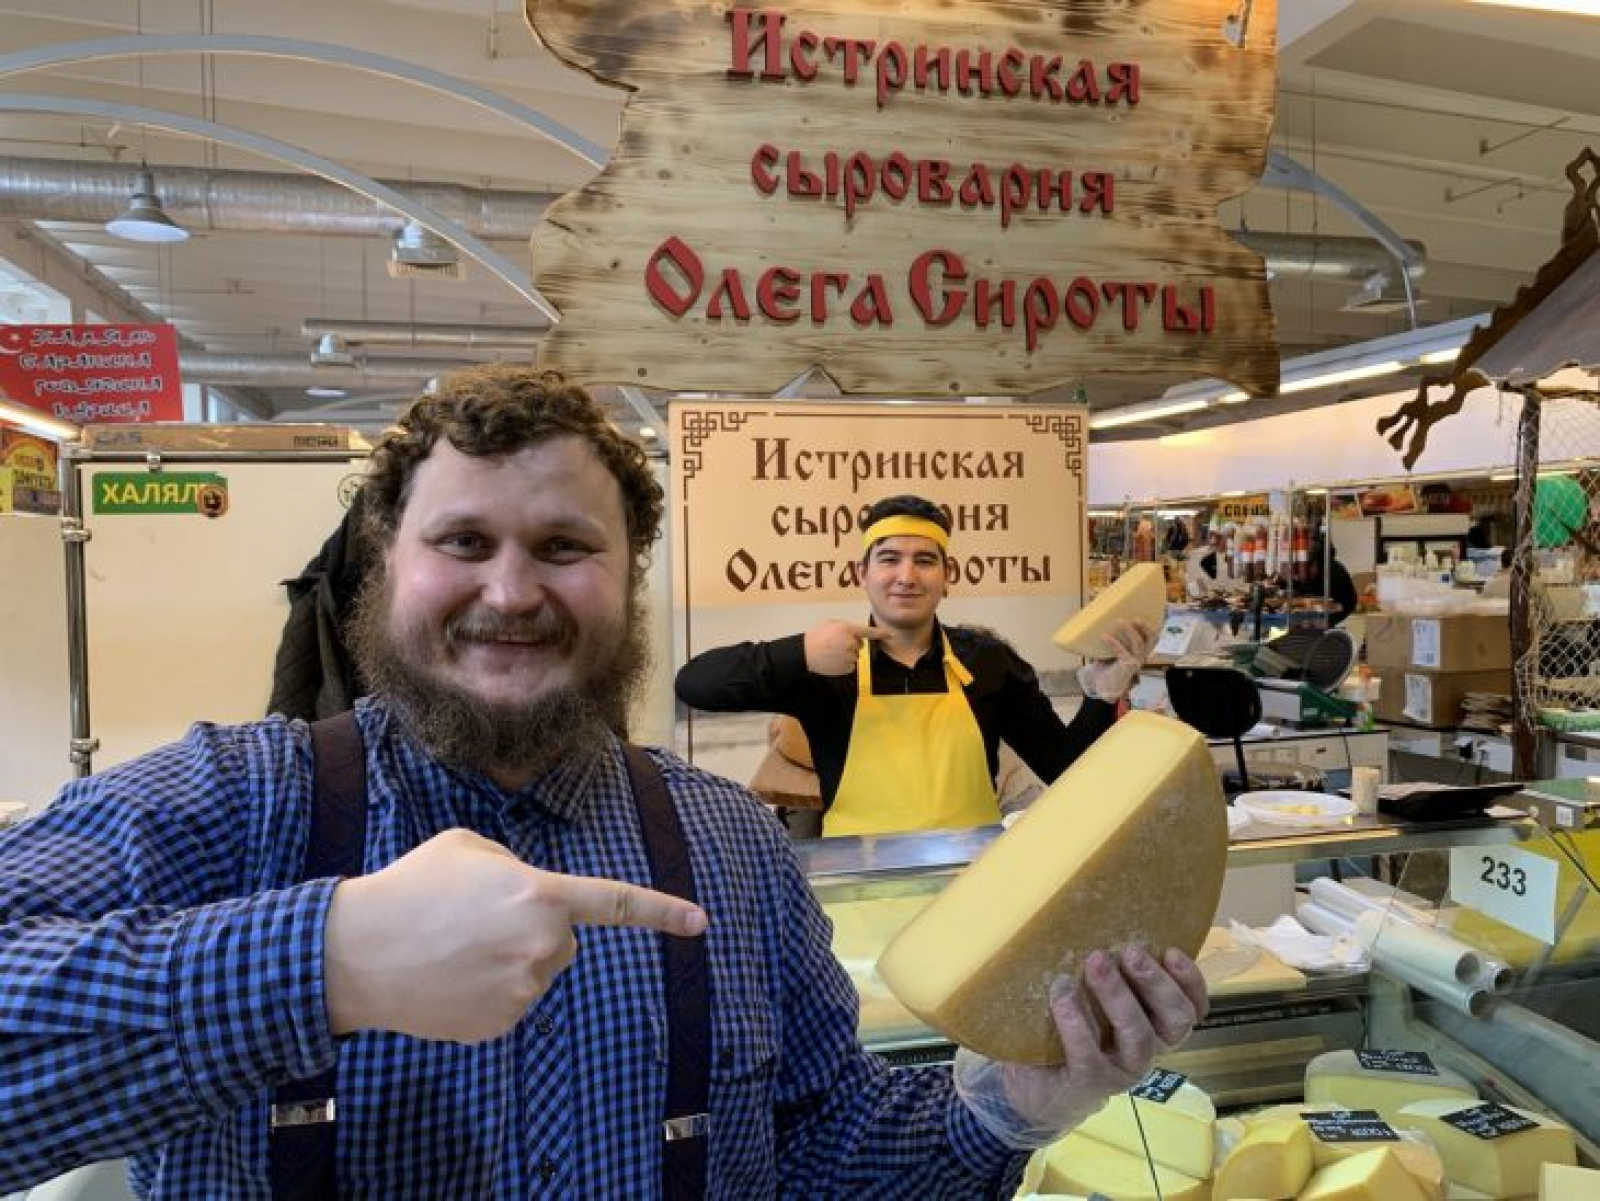 Истринской сыроварни русский пармезан